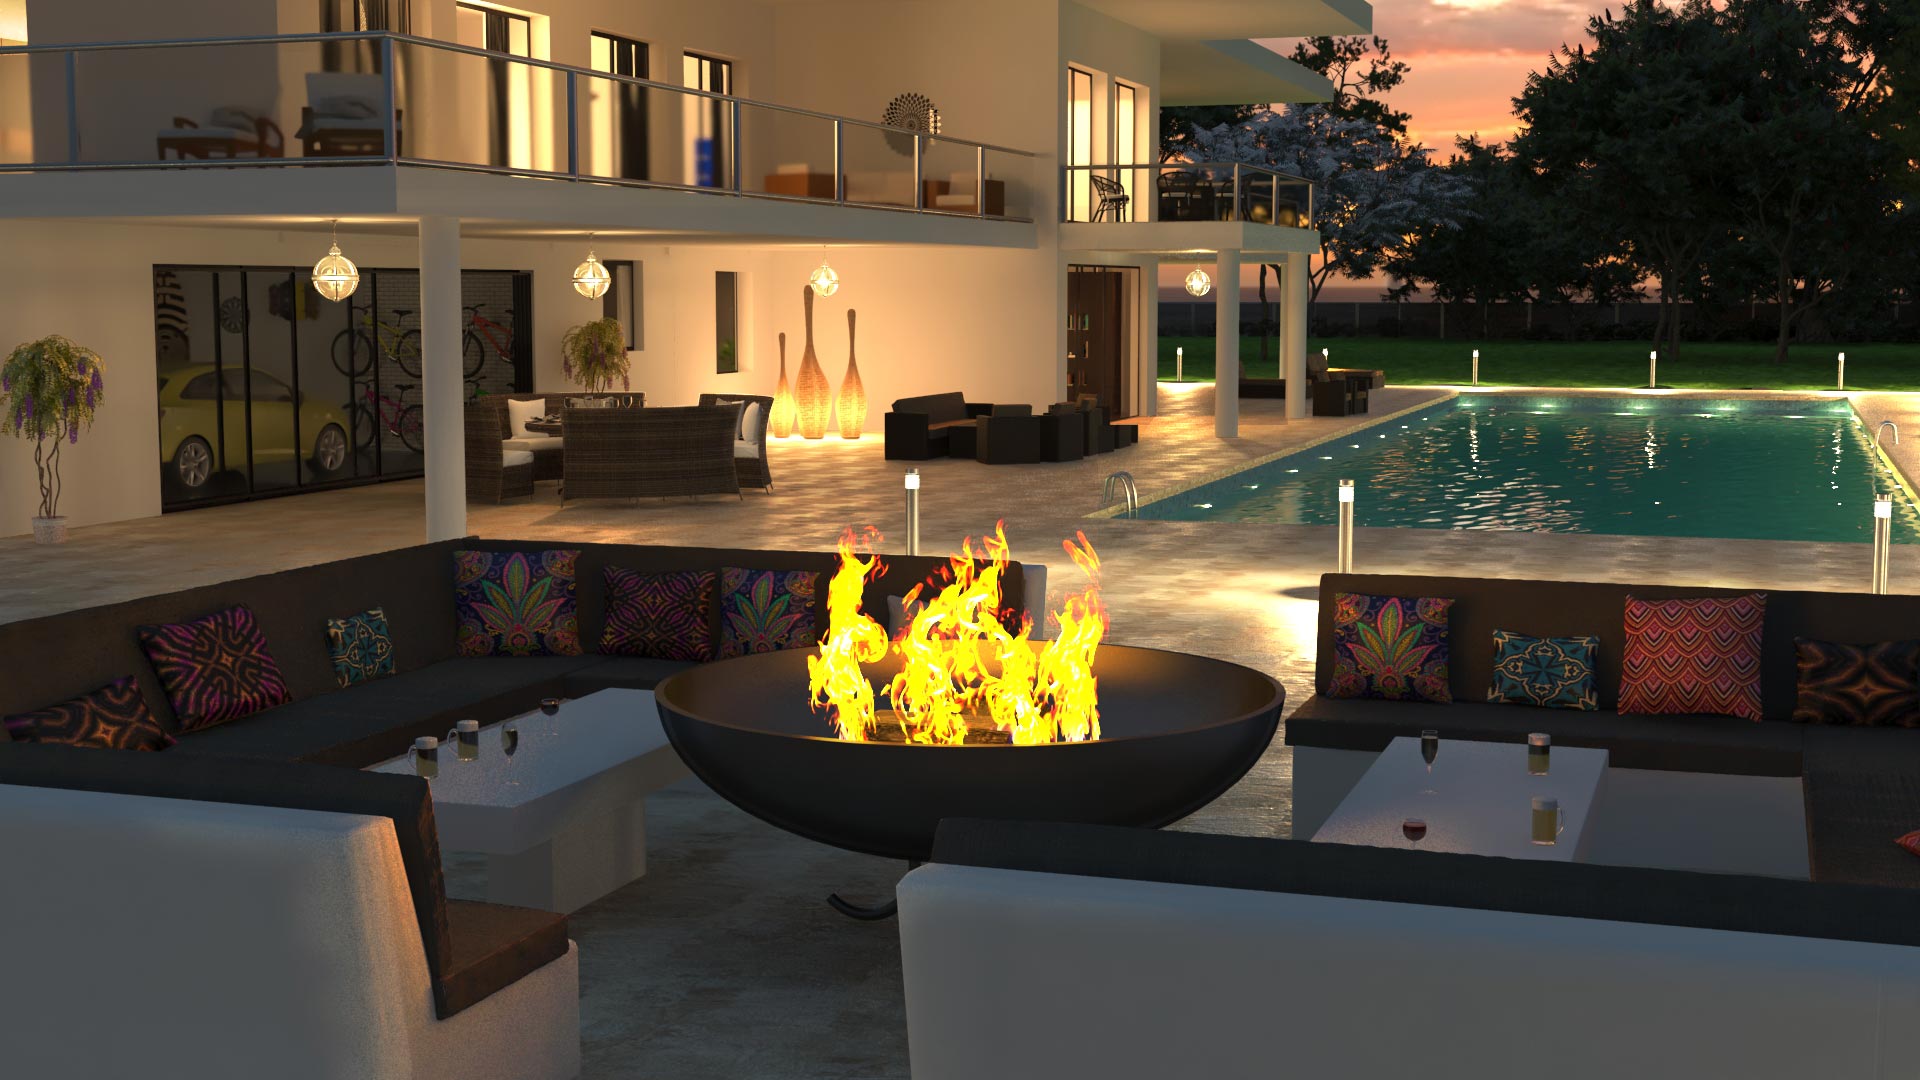 Villa avec piscine, vue sur le brasero lounge. Visualisation architecturale par Marina Sije, Graphiste 3d freelance.